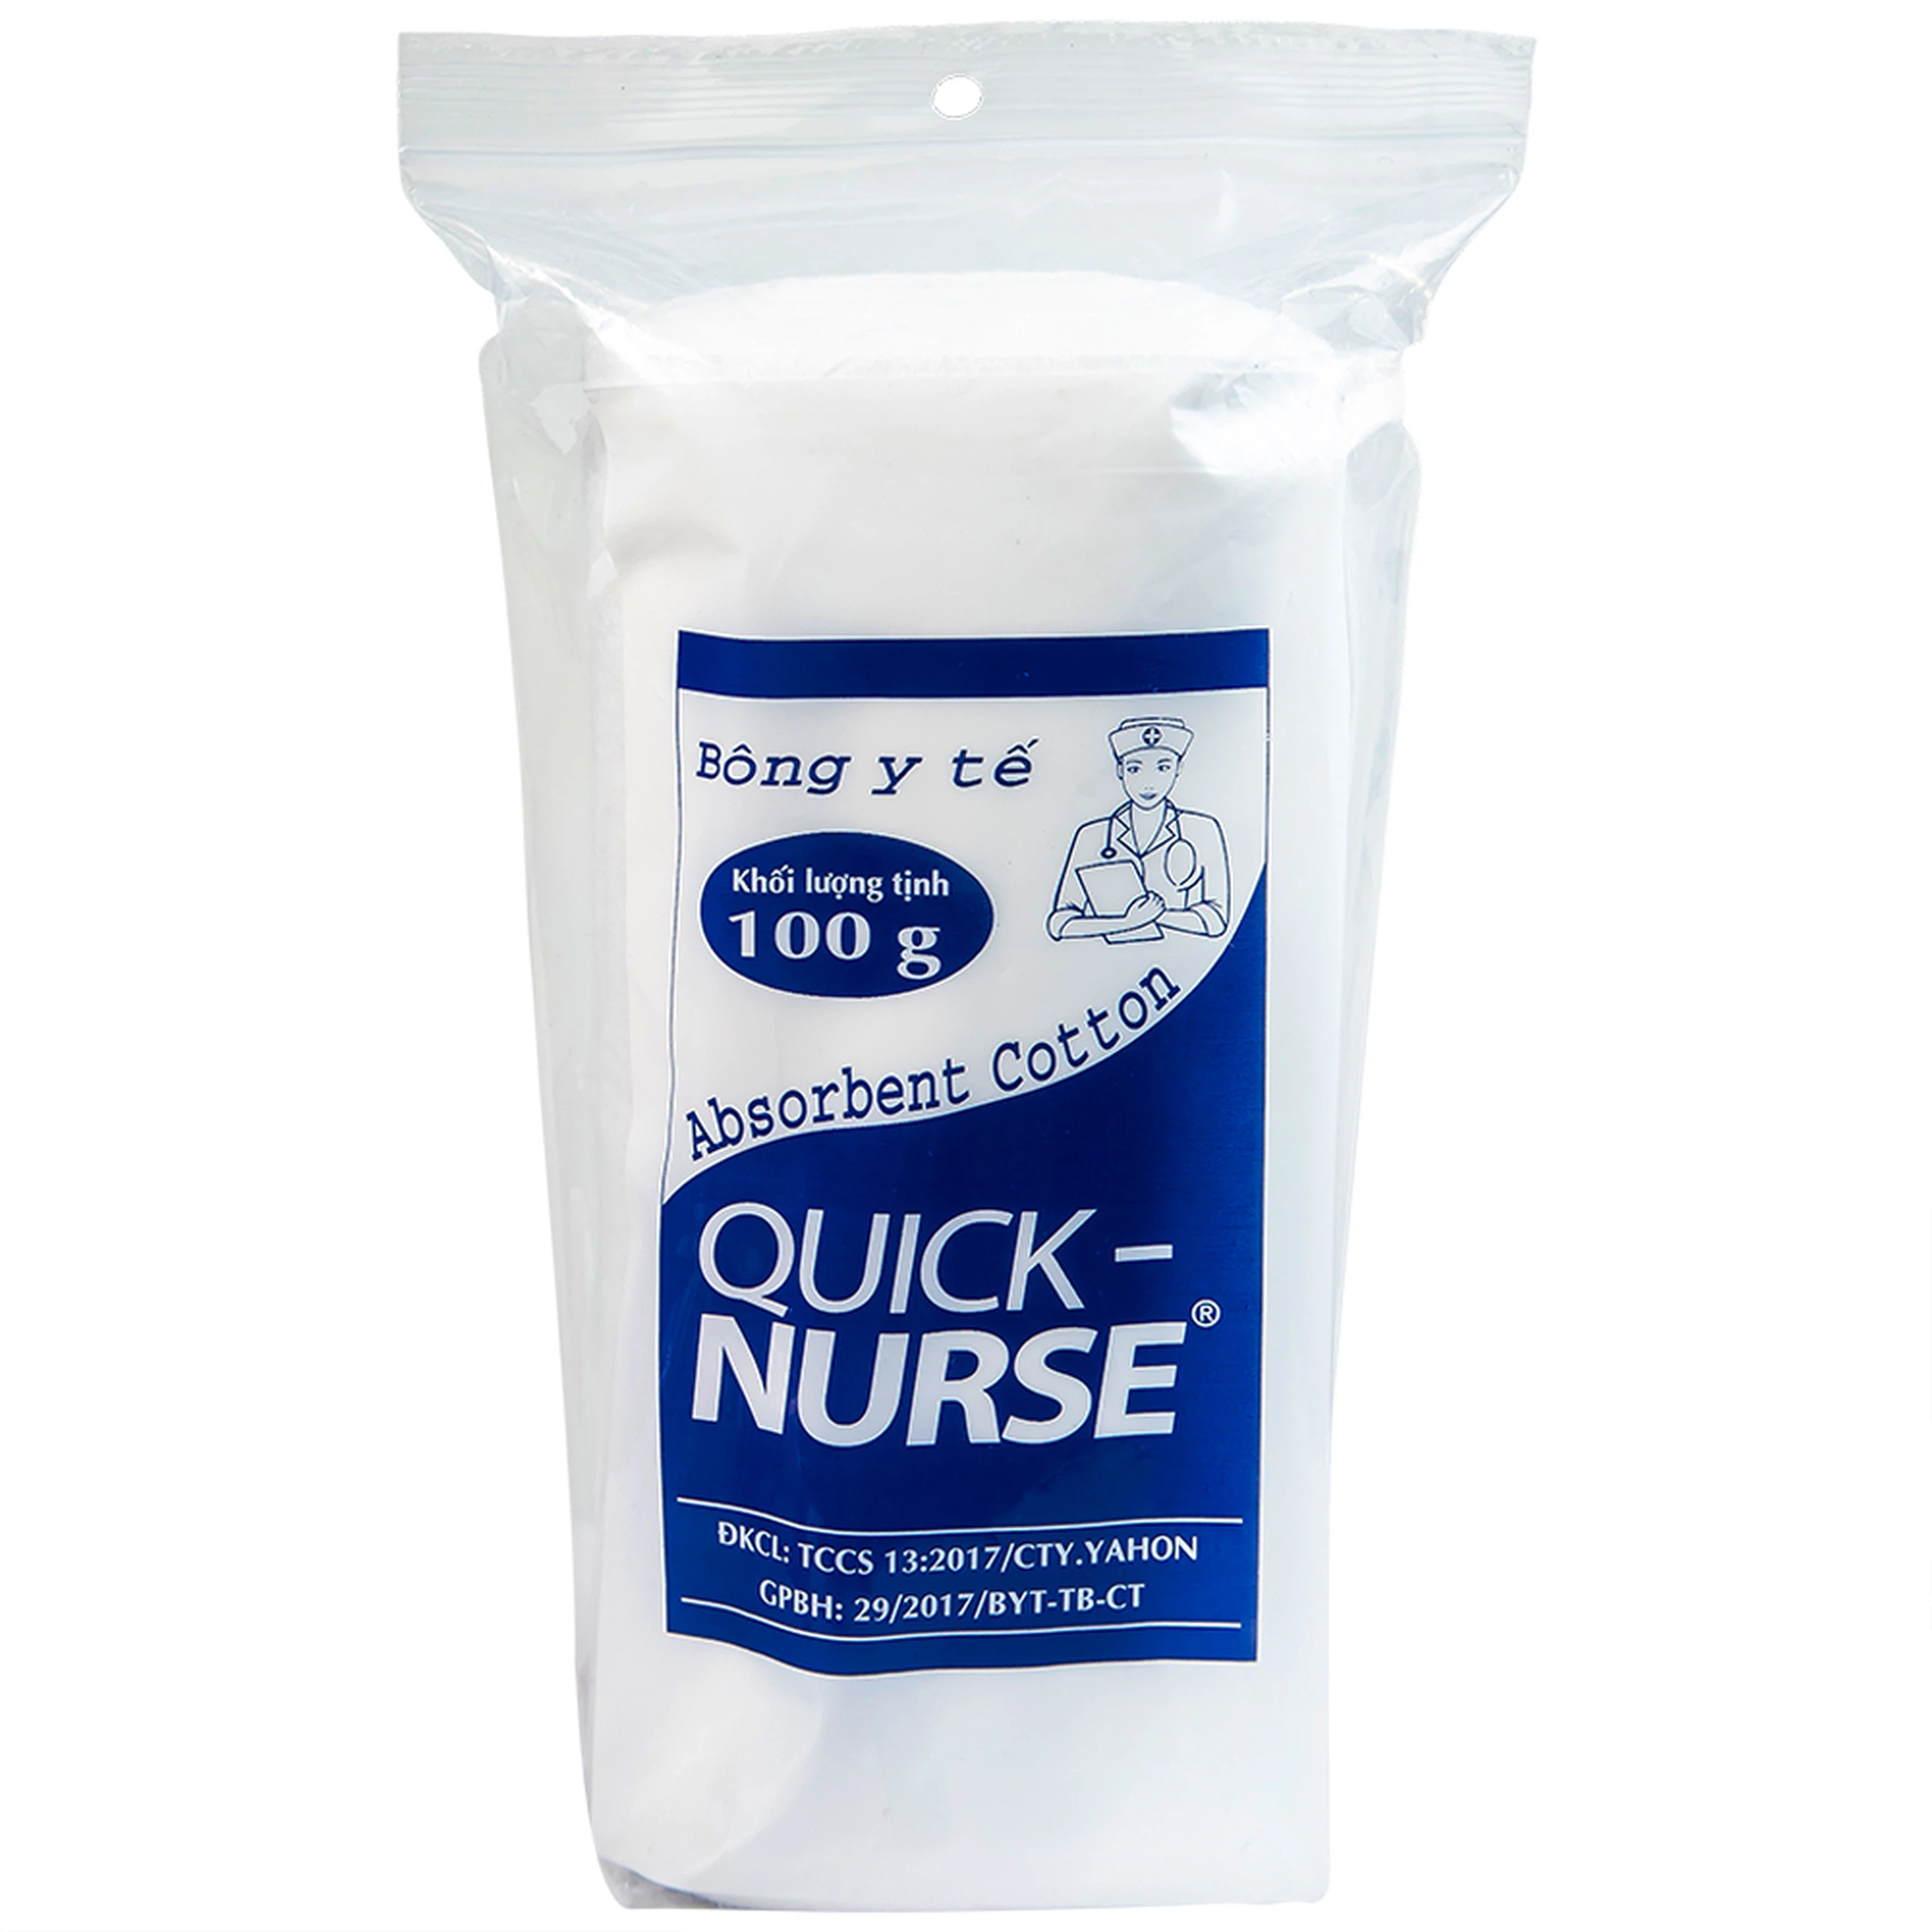 Bông y tế Quick Nurse (100g) dùng cho vết thương ngoài da, sát trùng, vệ sinh cho bé